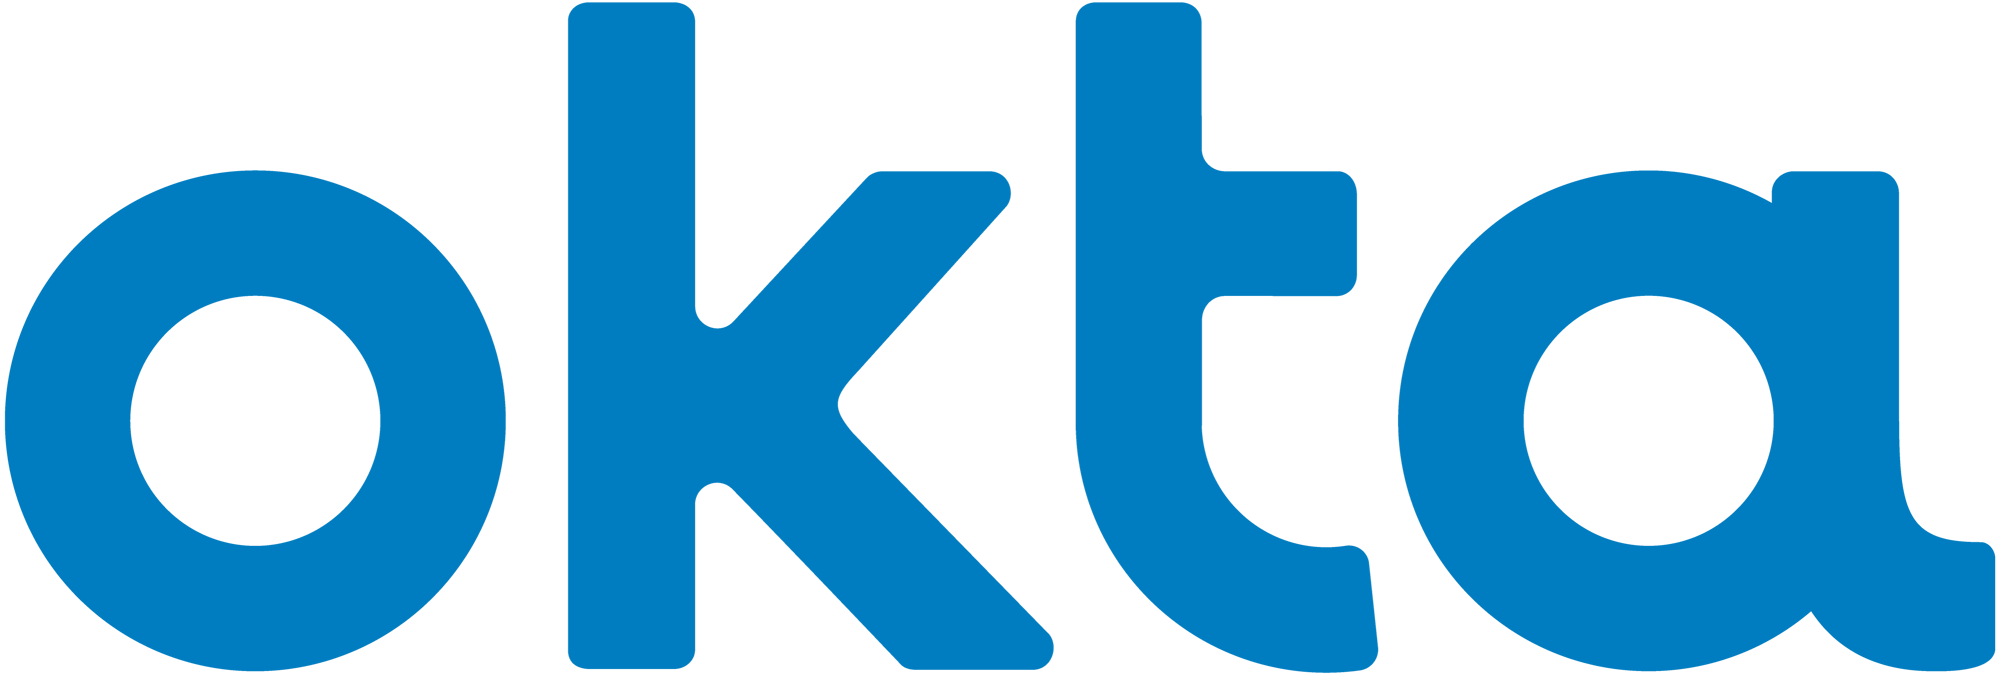 Customer-Okta-Logo